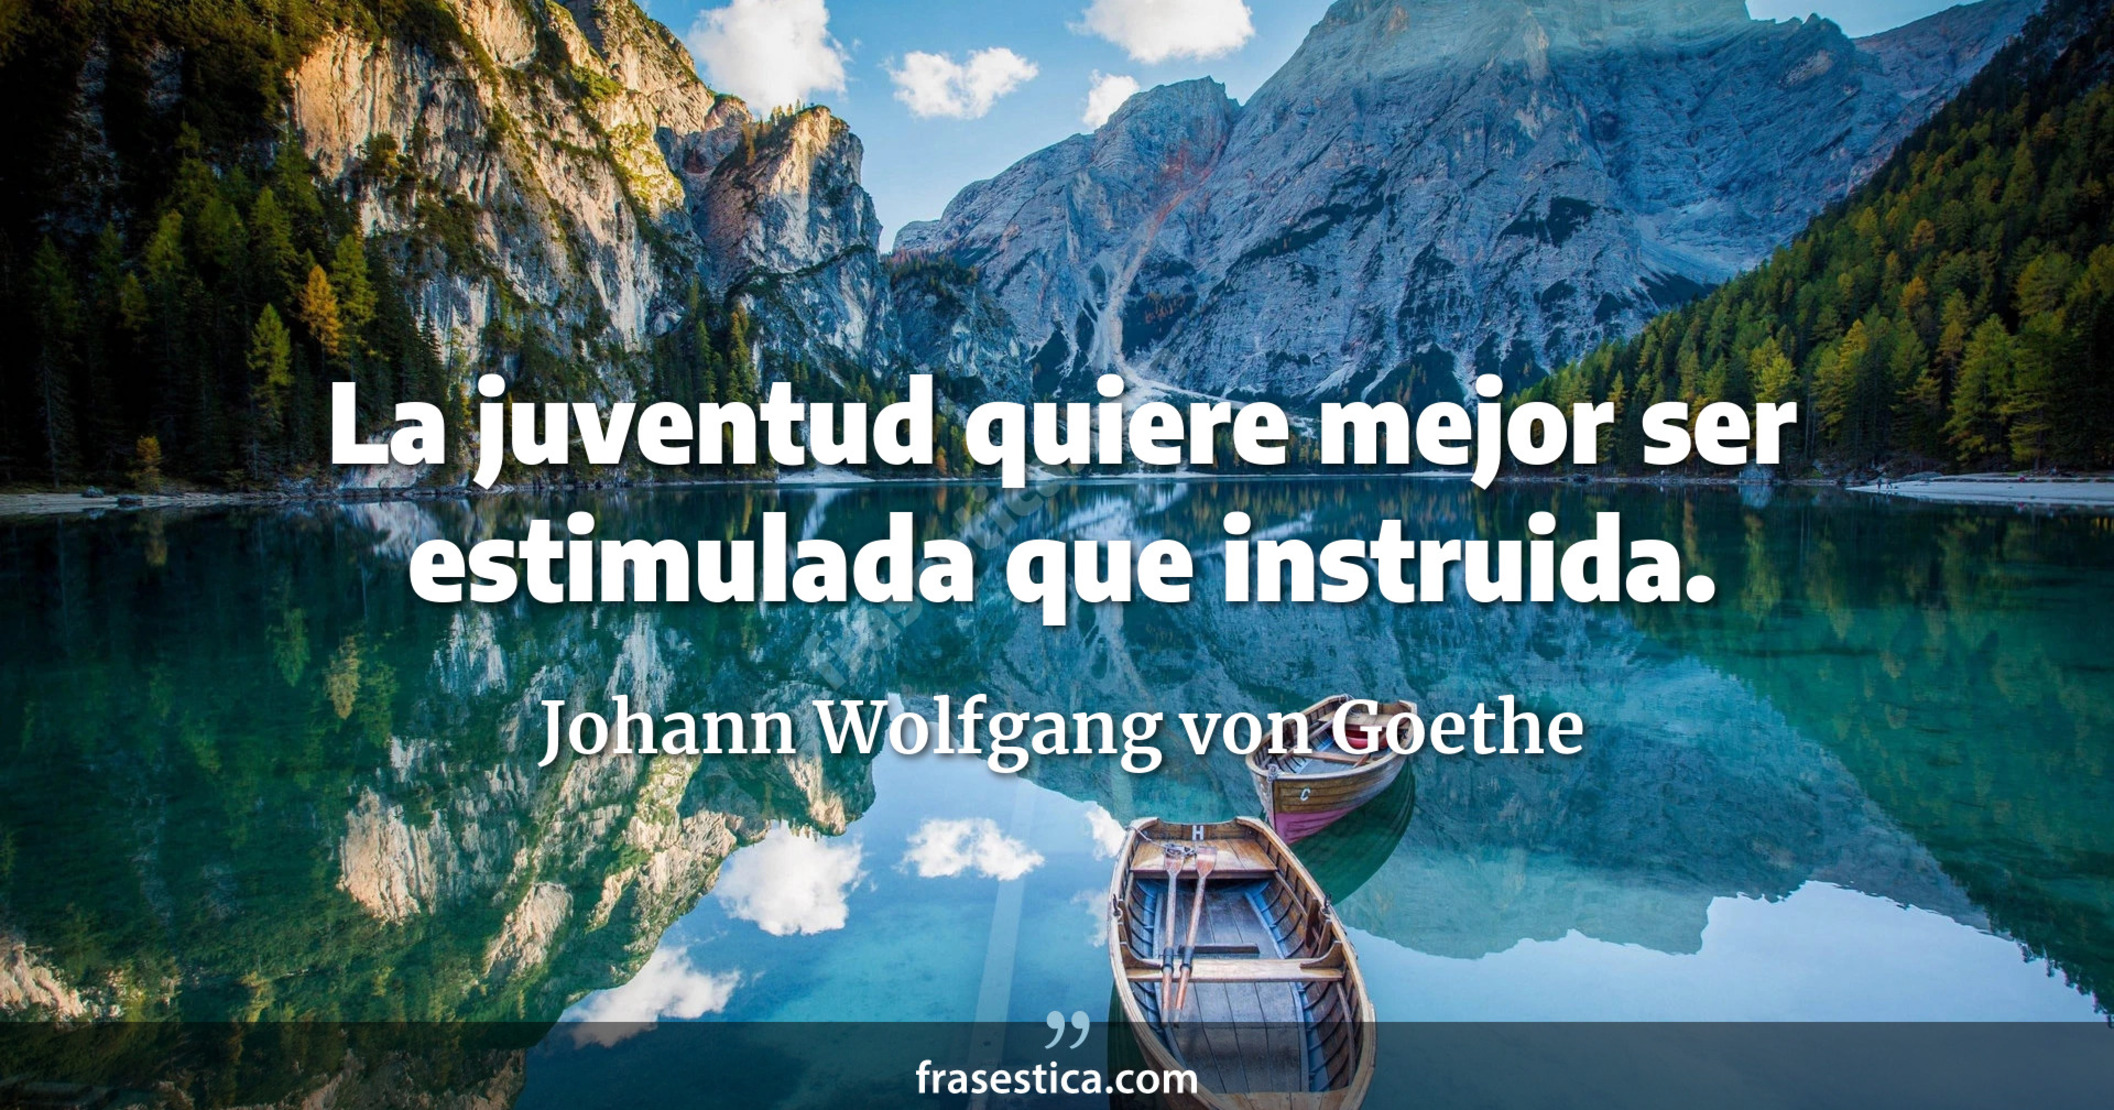 La juventud quiere mejor ser estimulada que instruida. - Johann Wolfgang von Goethe